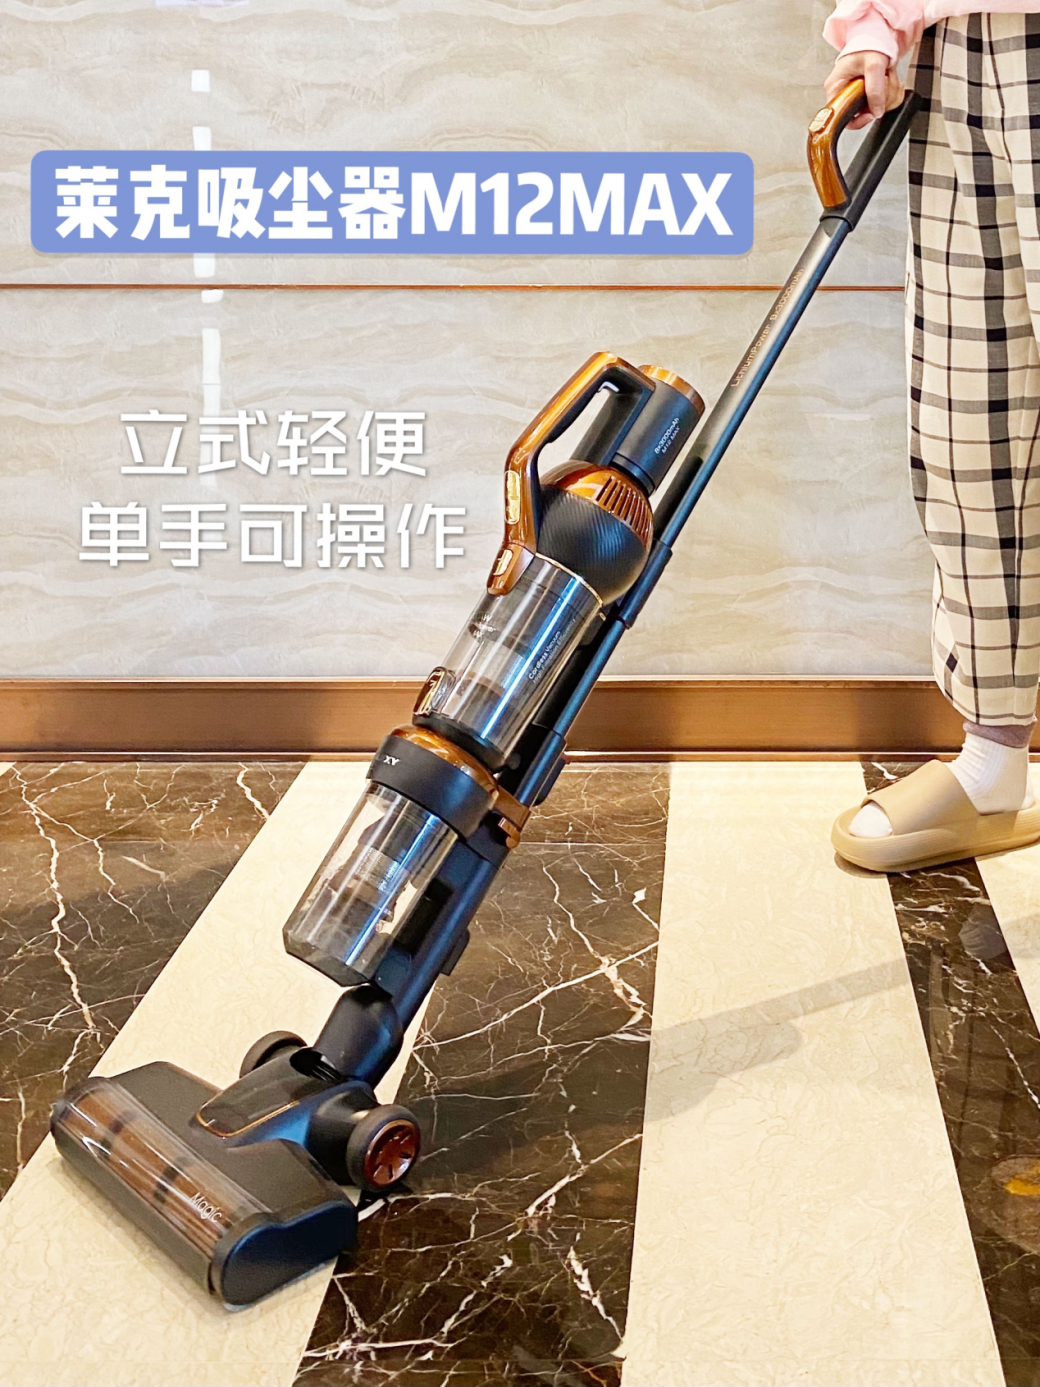 一口气解决居家卫生烦恼，就选莱克M12 MAX吸尘器